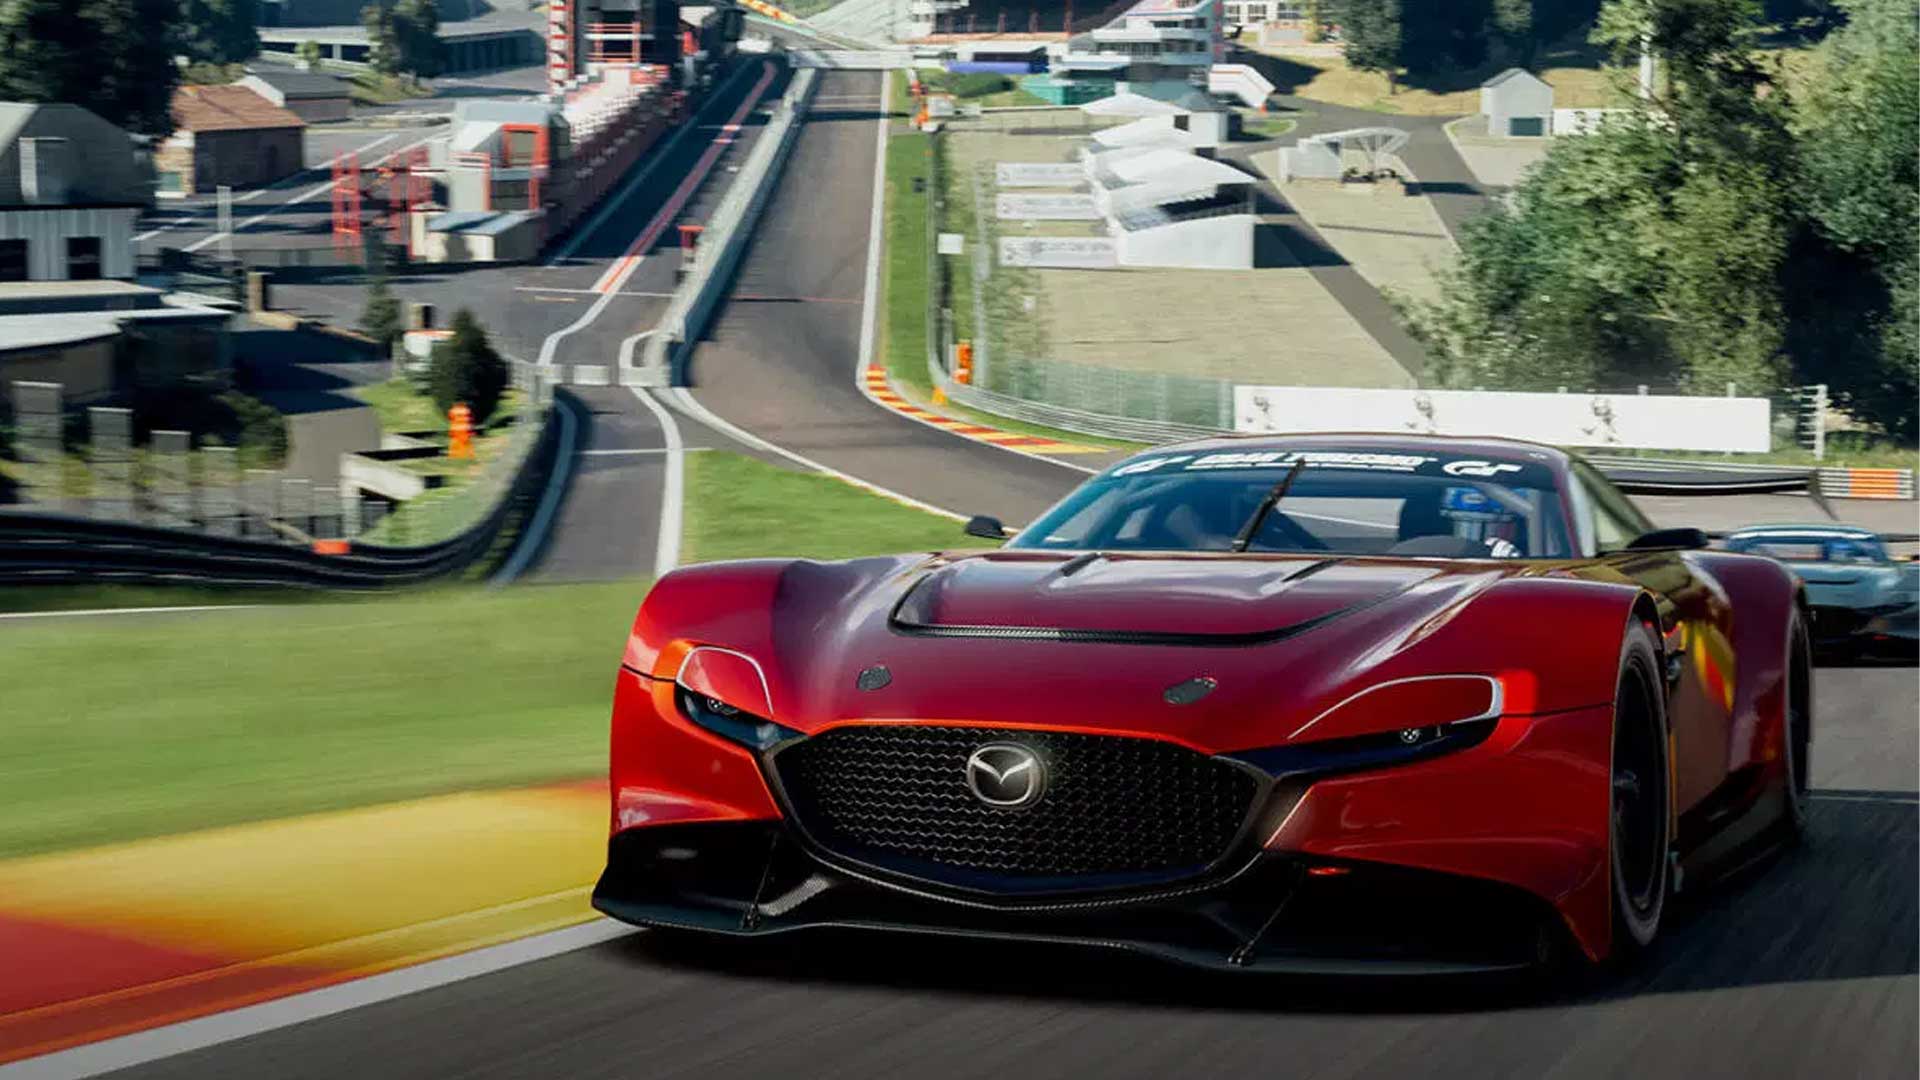 هر آنچه از بازی Gran Turismo 7 می دانیم